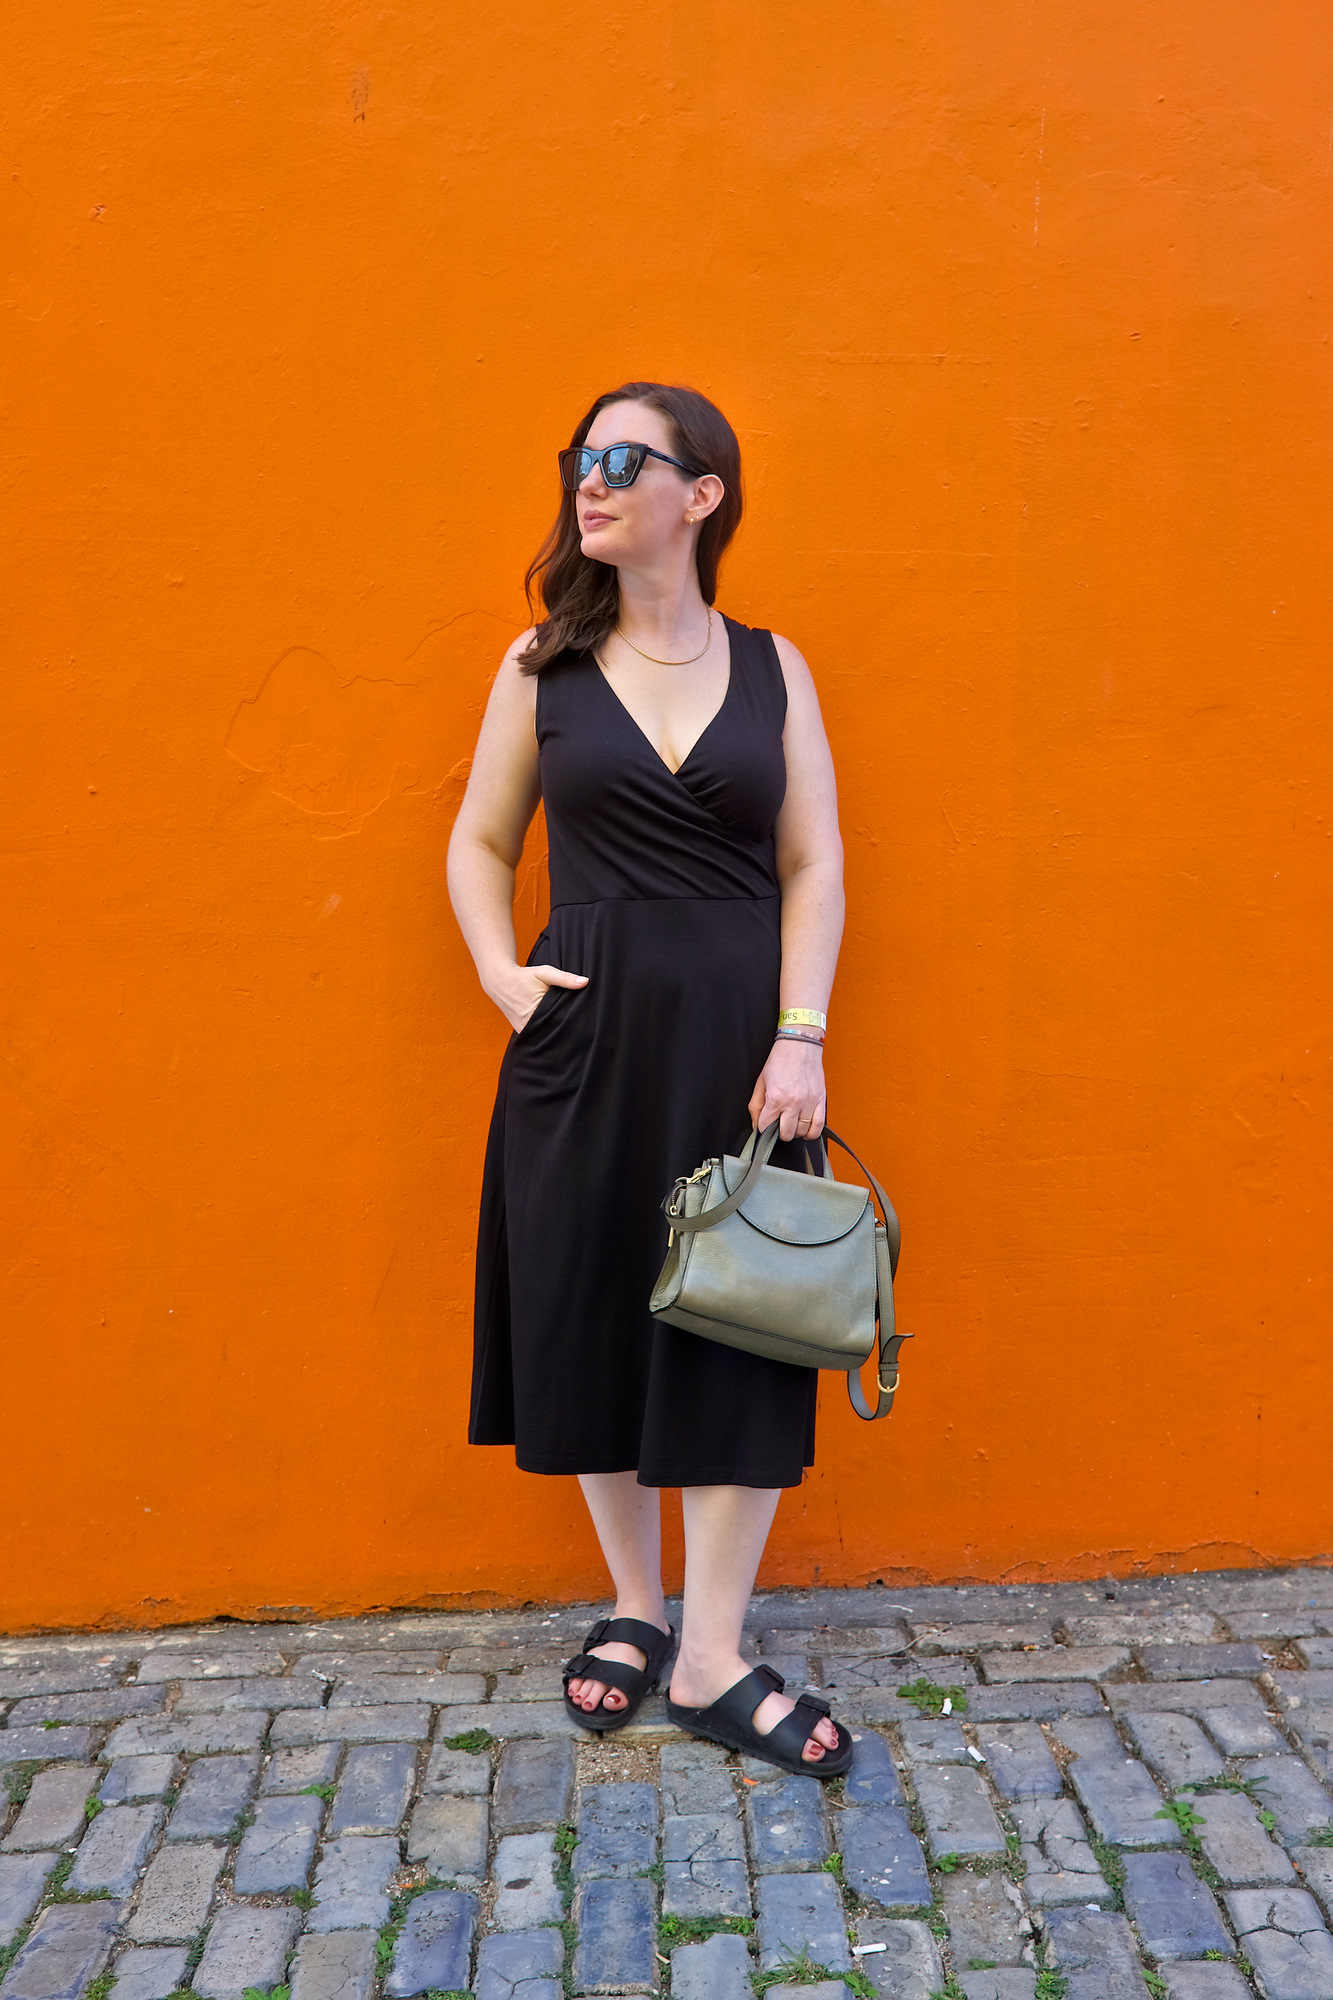 Alyssa in a black dress in front of an orange wall in Old San Juan